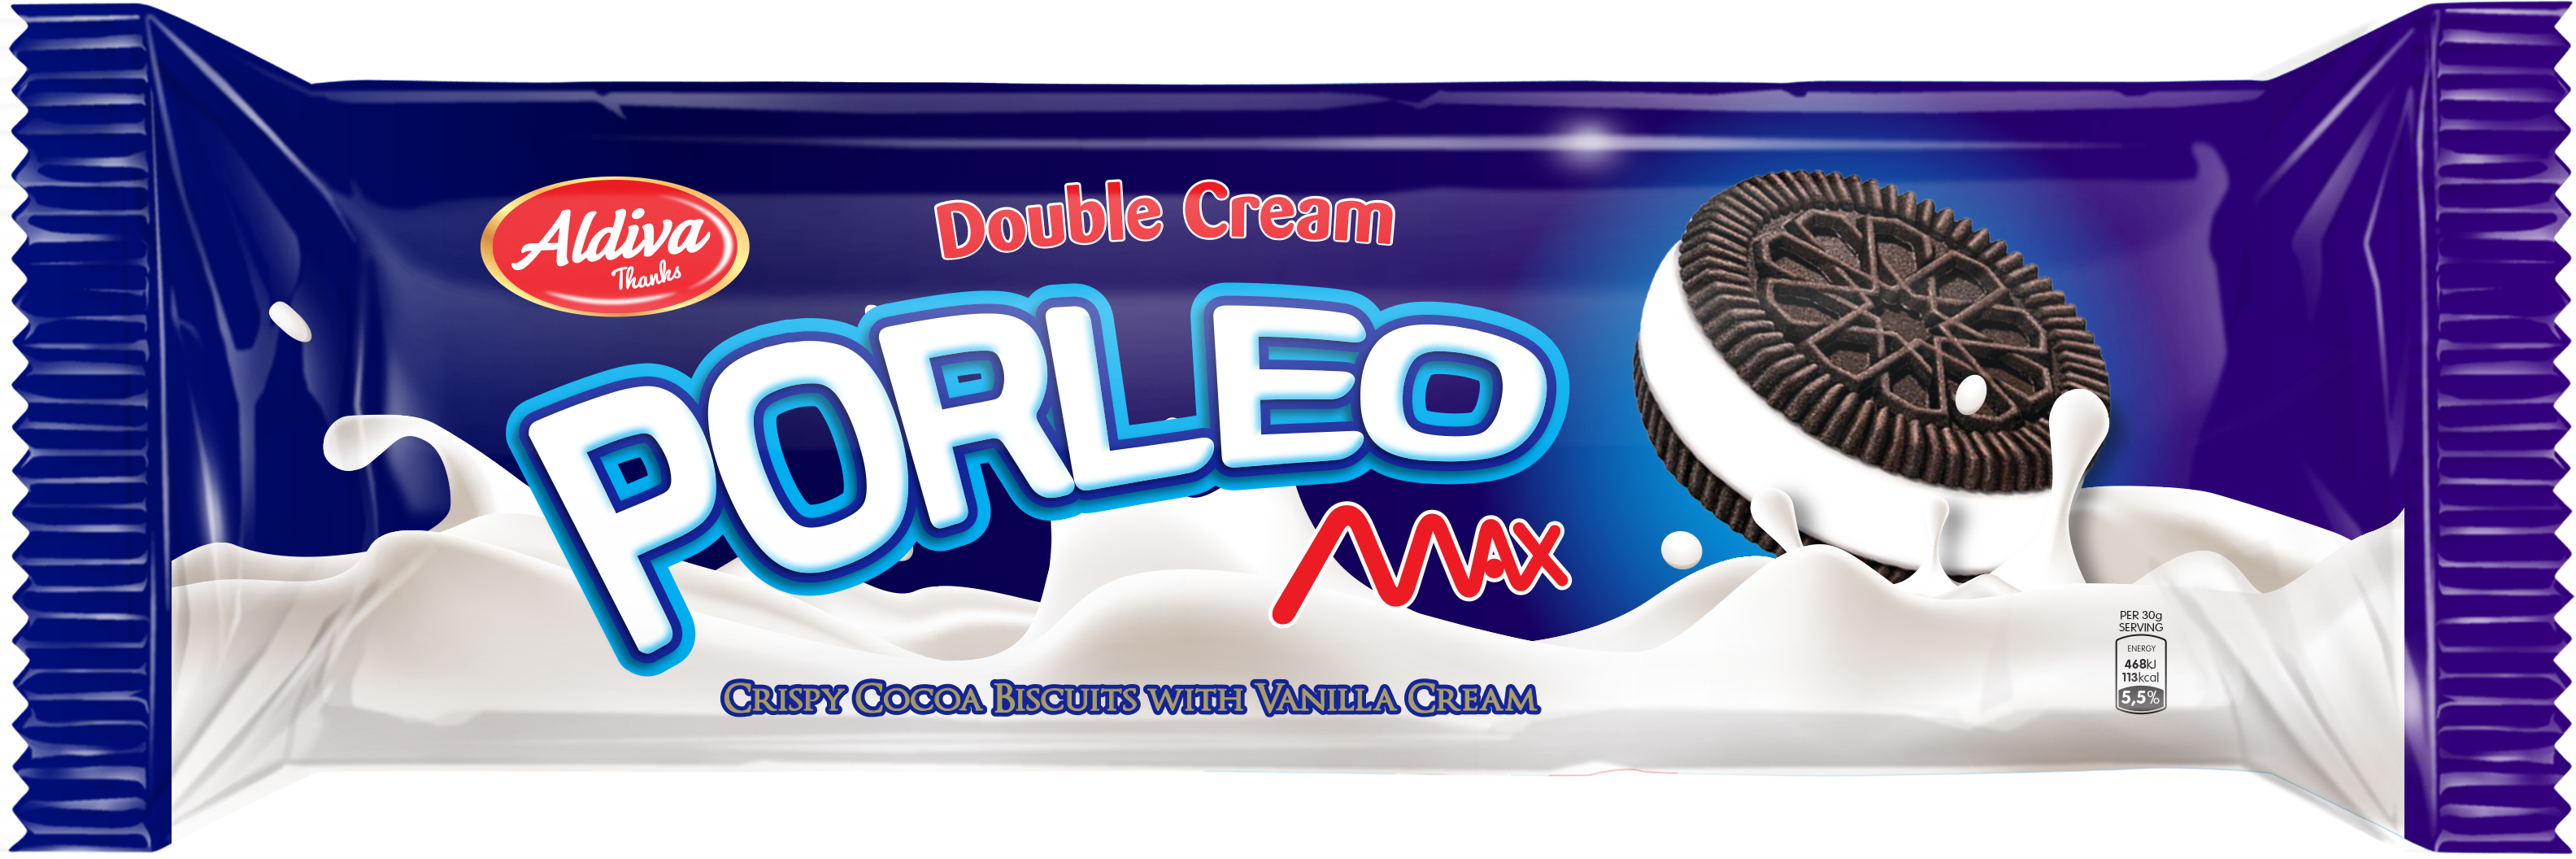 Porleo Double Cream Max